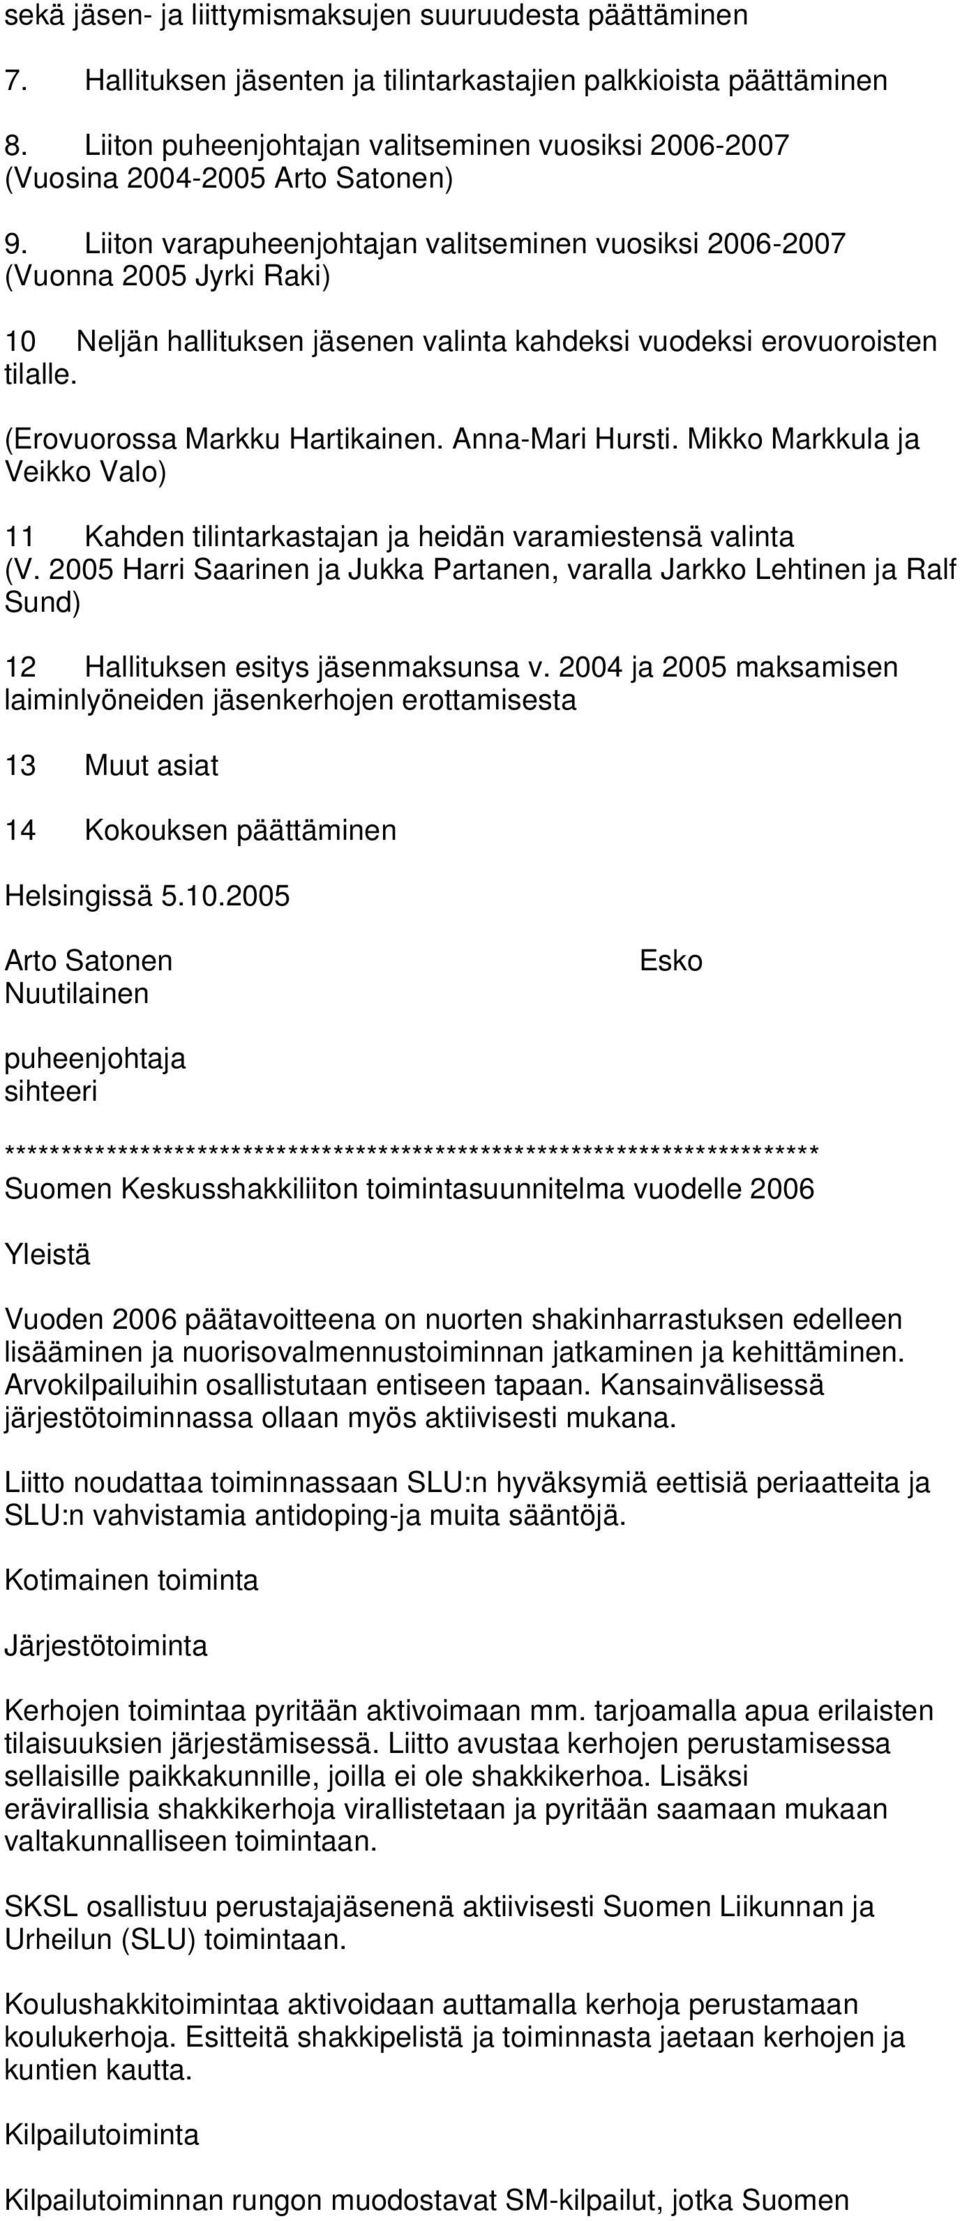 Liiton varapuheenjohtajan valitseminen vuosiksi 2006-2007 (Vuonna 2005 Jyrki Raki) 10 Neljän hallituksen jäsenen valinta kahdeksi vuodeksi erovuoroisten tilalle. (Erovuorossa Markku Hartikainen.